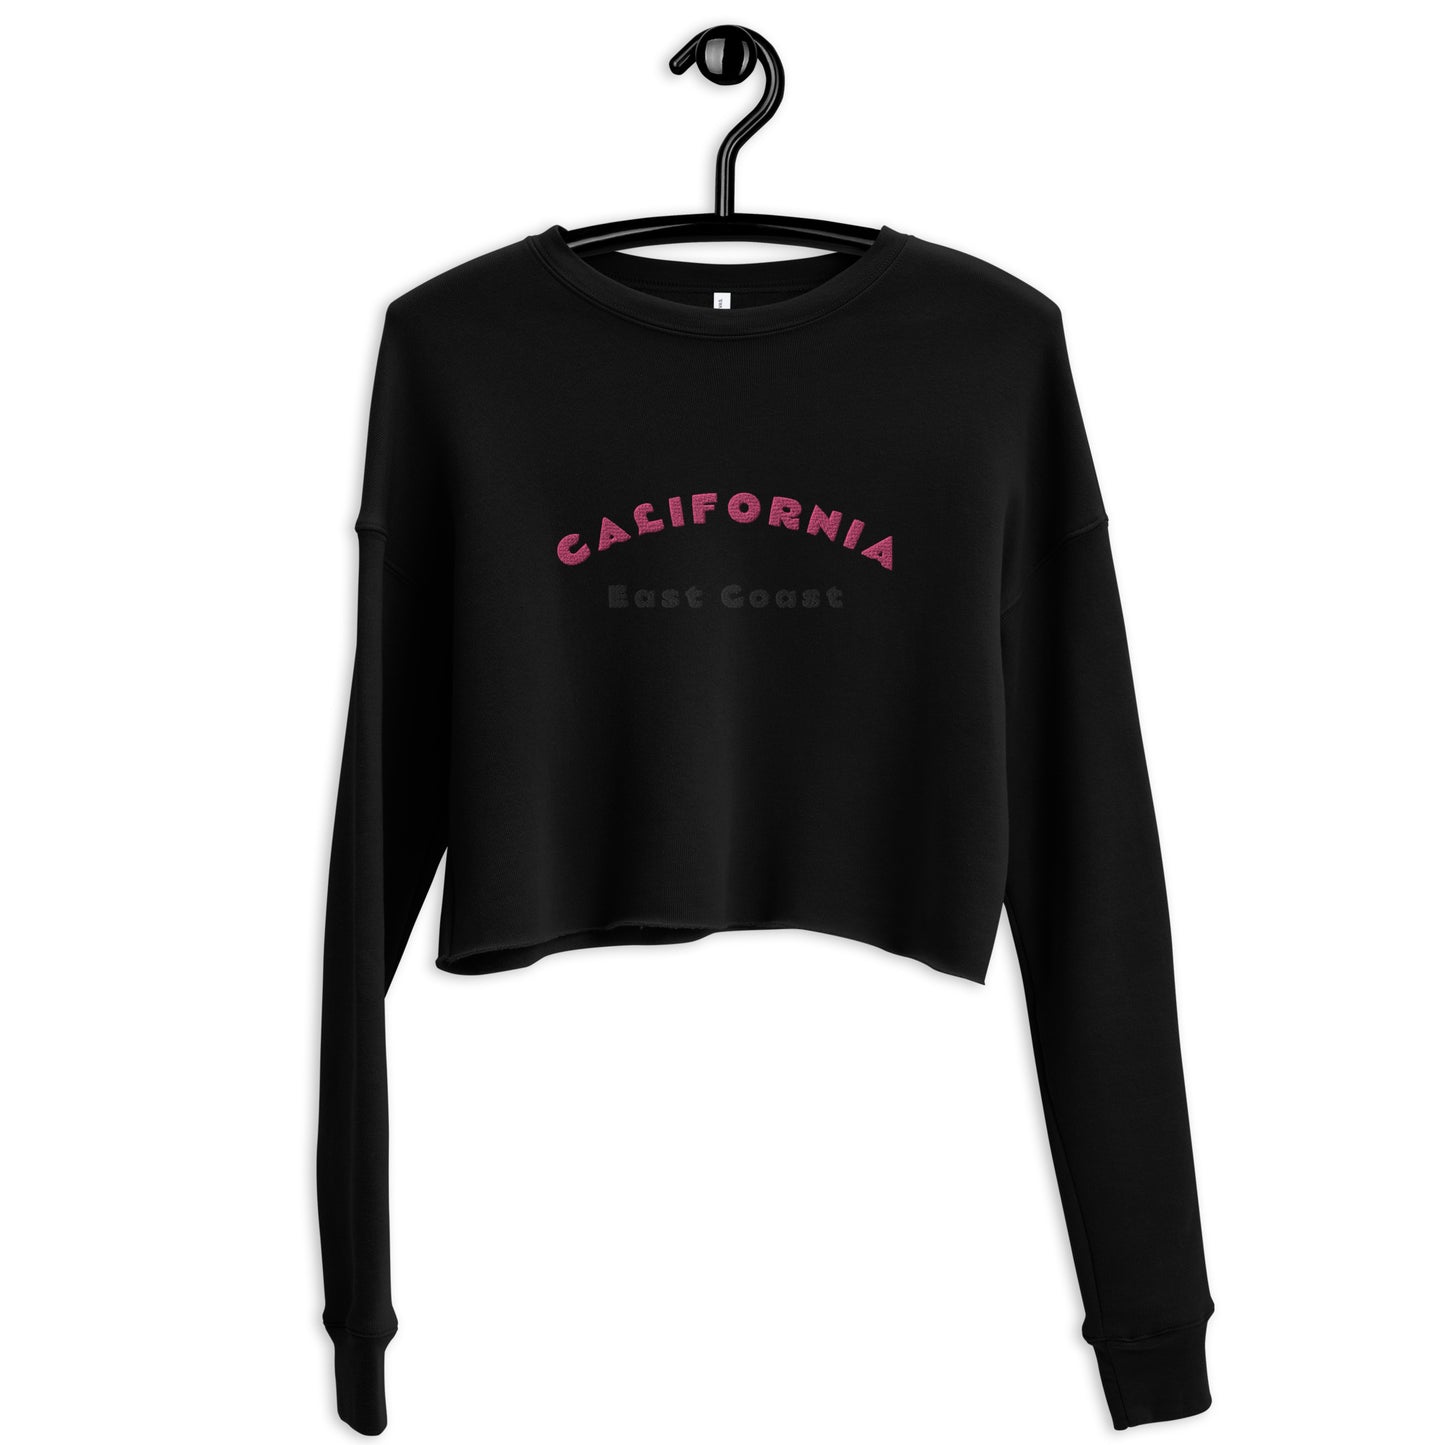 Kurz geschnittenes Damen-Sweatshirt „California“.